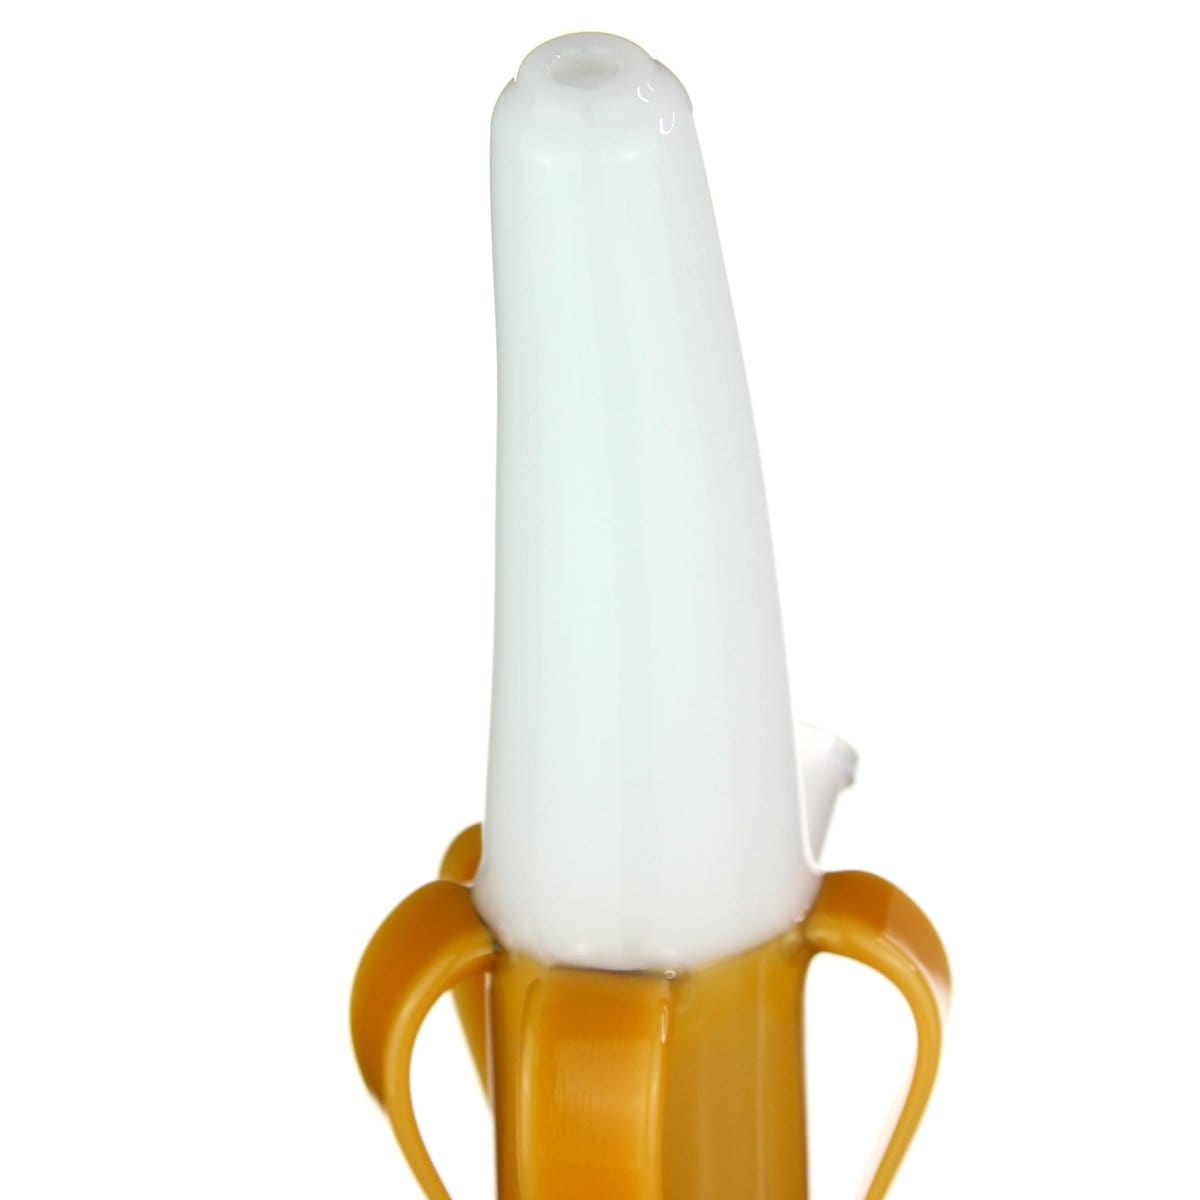 VG Distributor Glass Banana Flavored Dab Rig